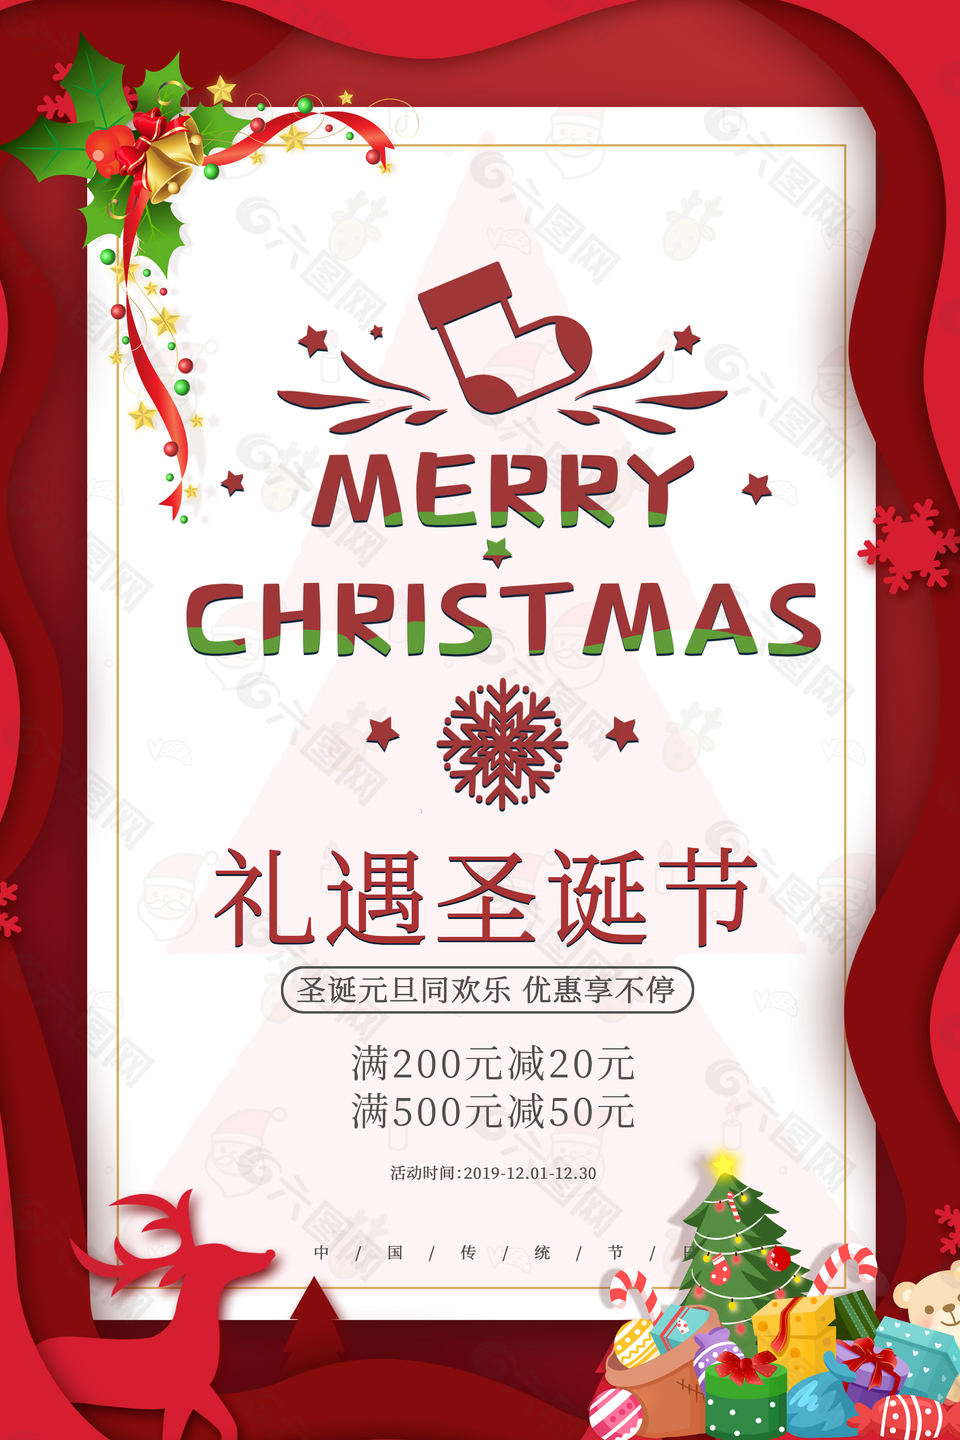 礼遇圣诞节红色简约节日元旦圣诞宣传海报